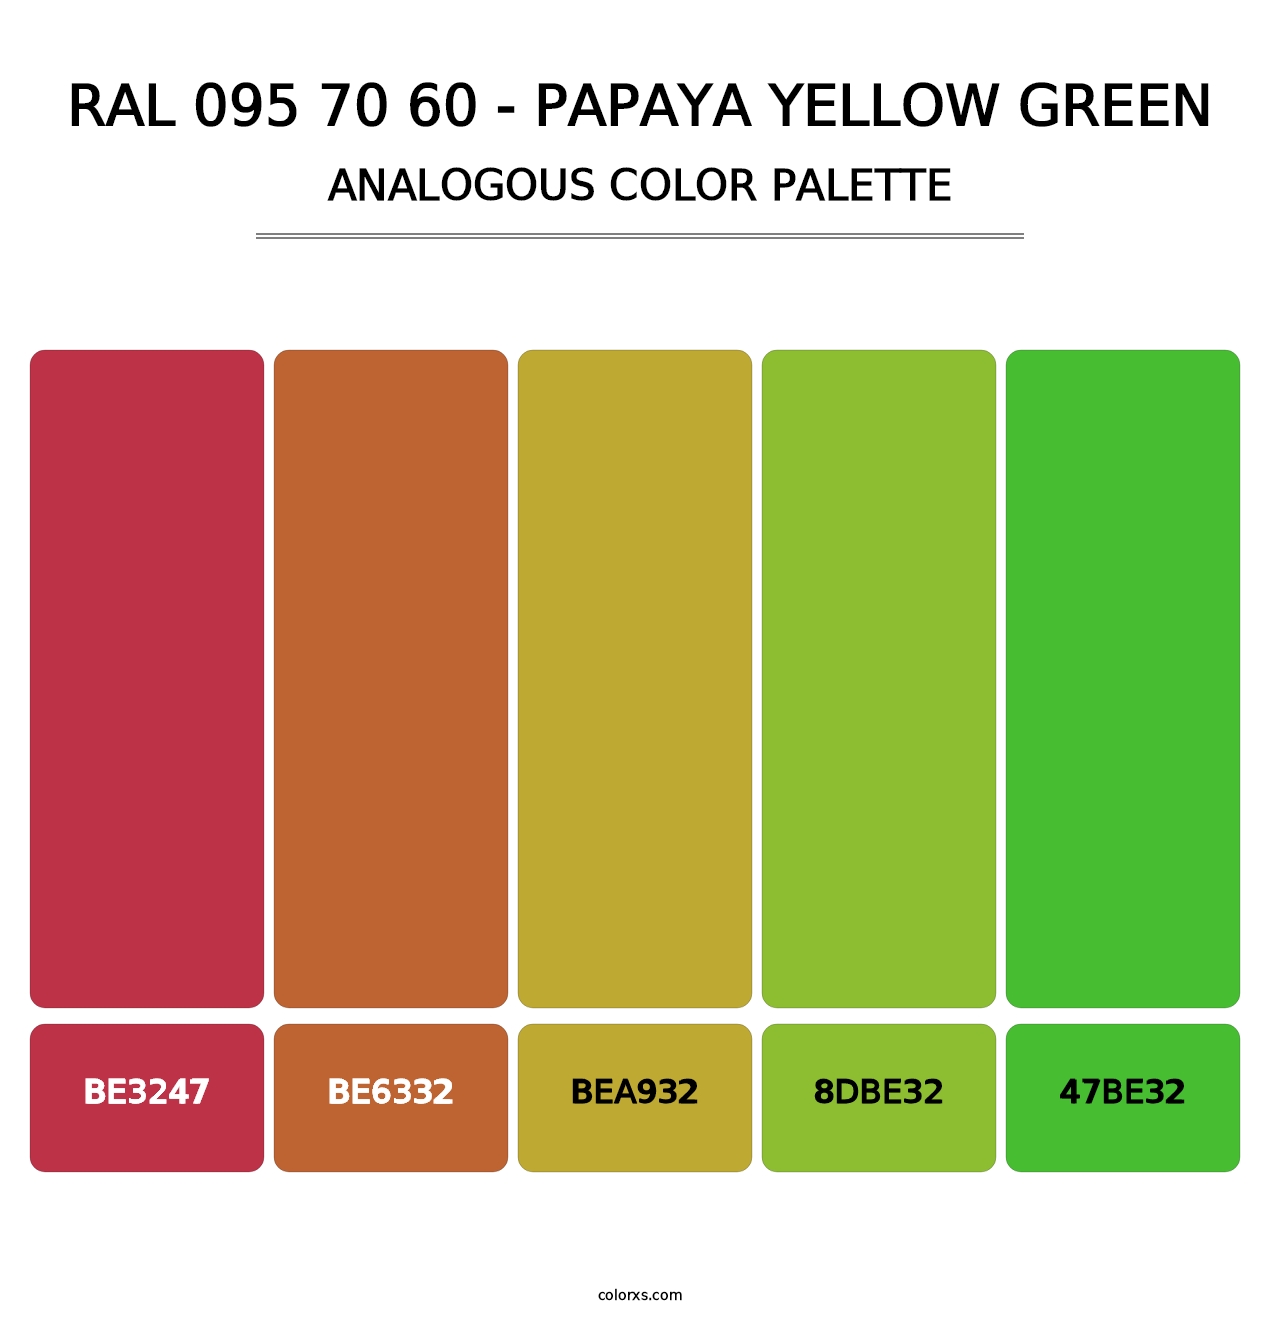 RAL 095 70 60 - Papaya Yellow Green - Analogous Color Palette